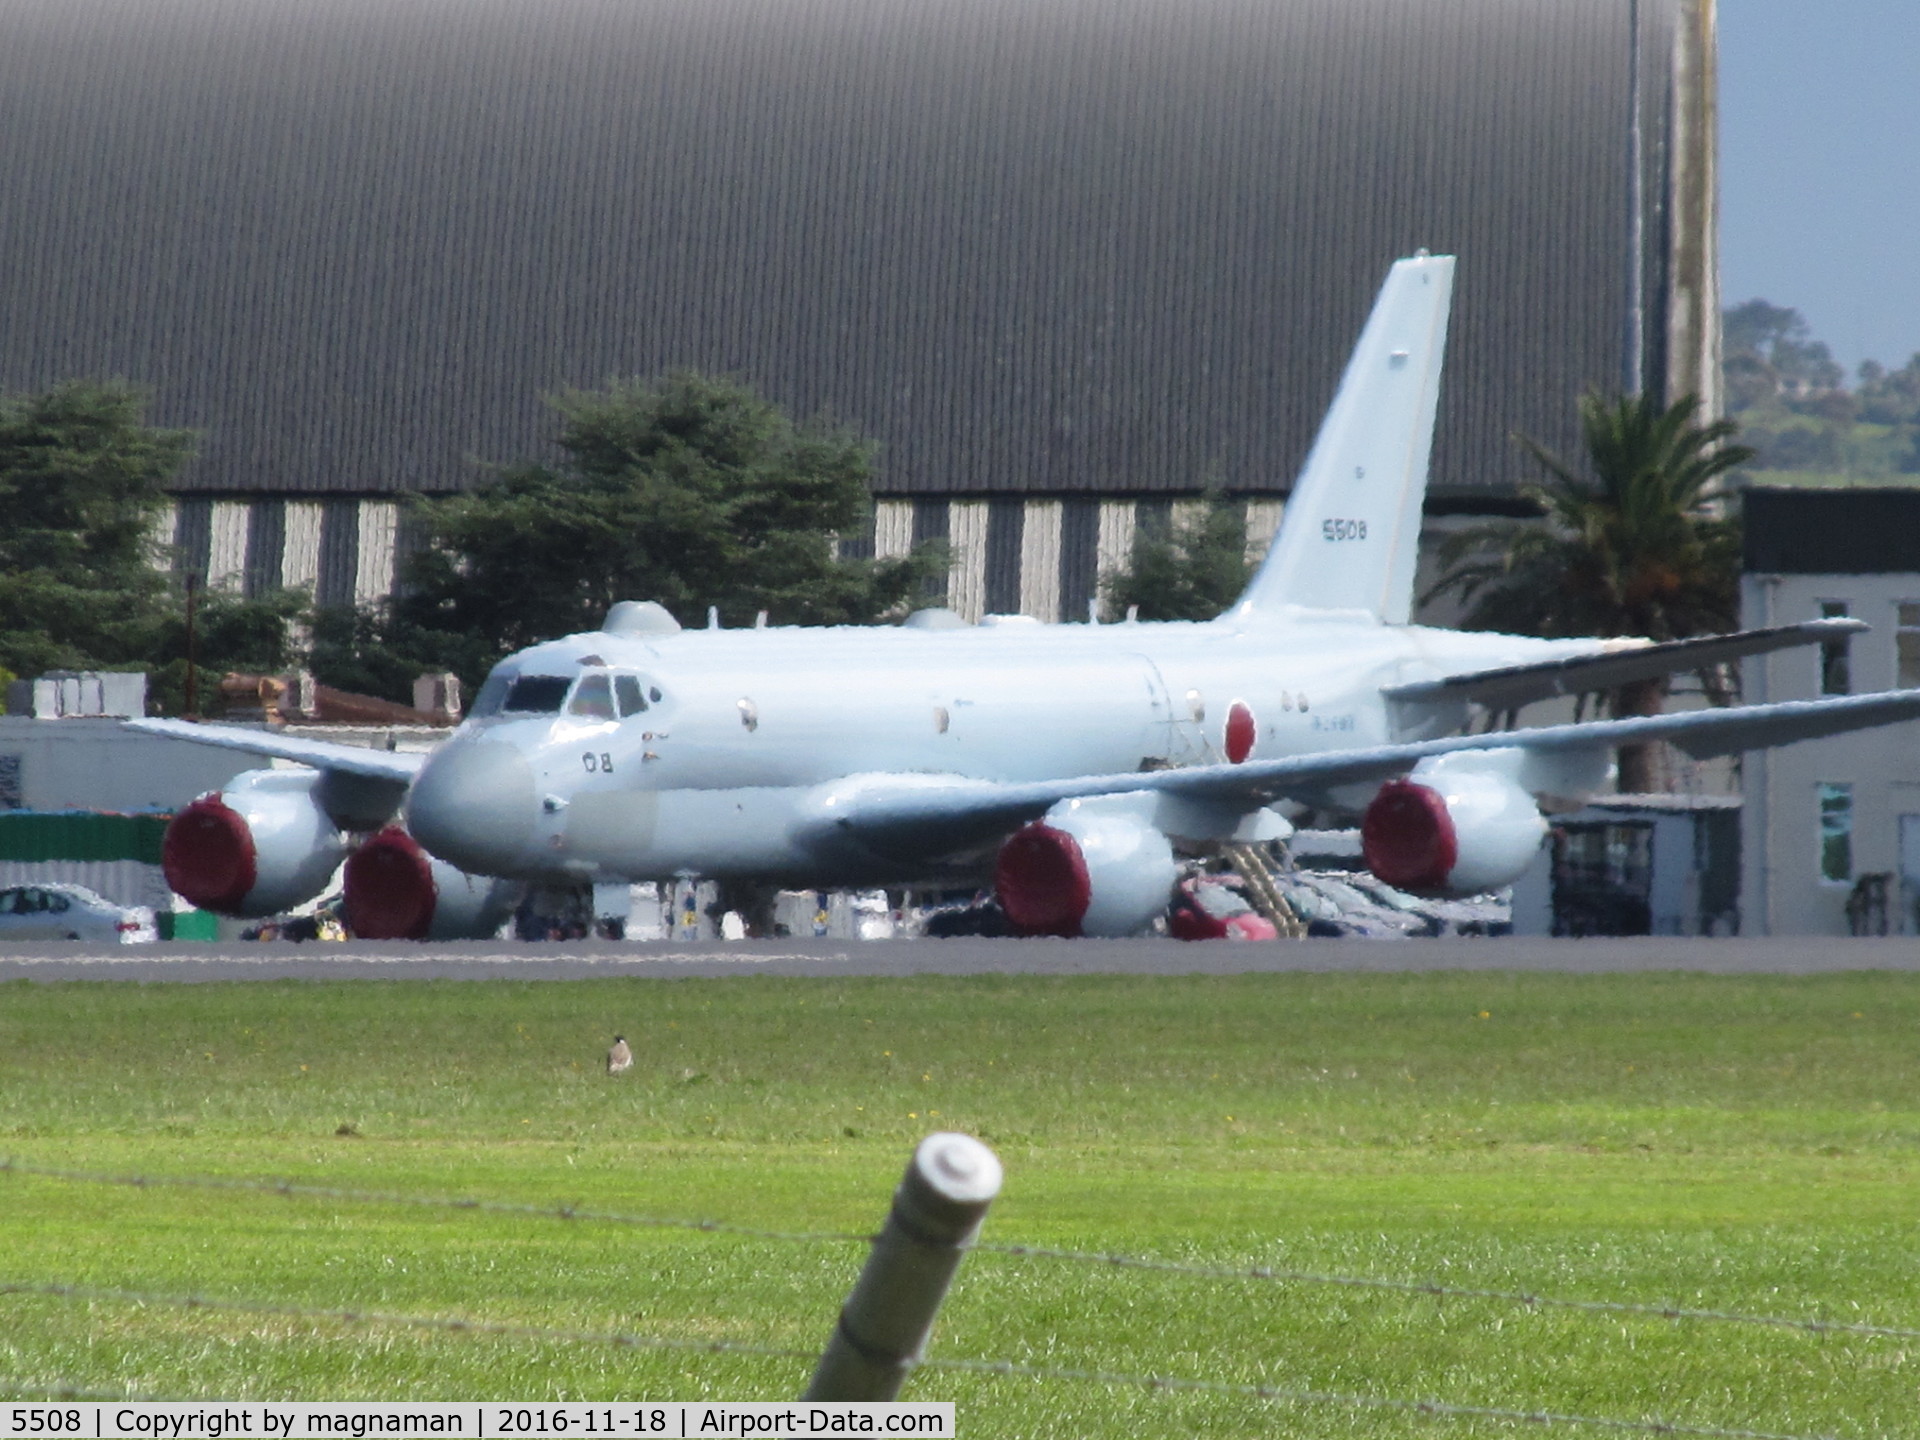 5508, 2014 Kawasaki P-1 C/N 8, Visiting NZ along with 5505 - at Whenuapai